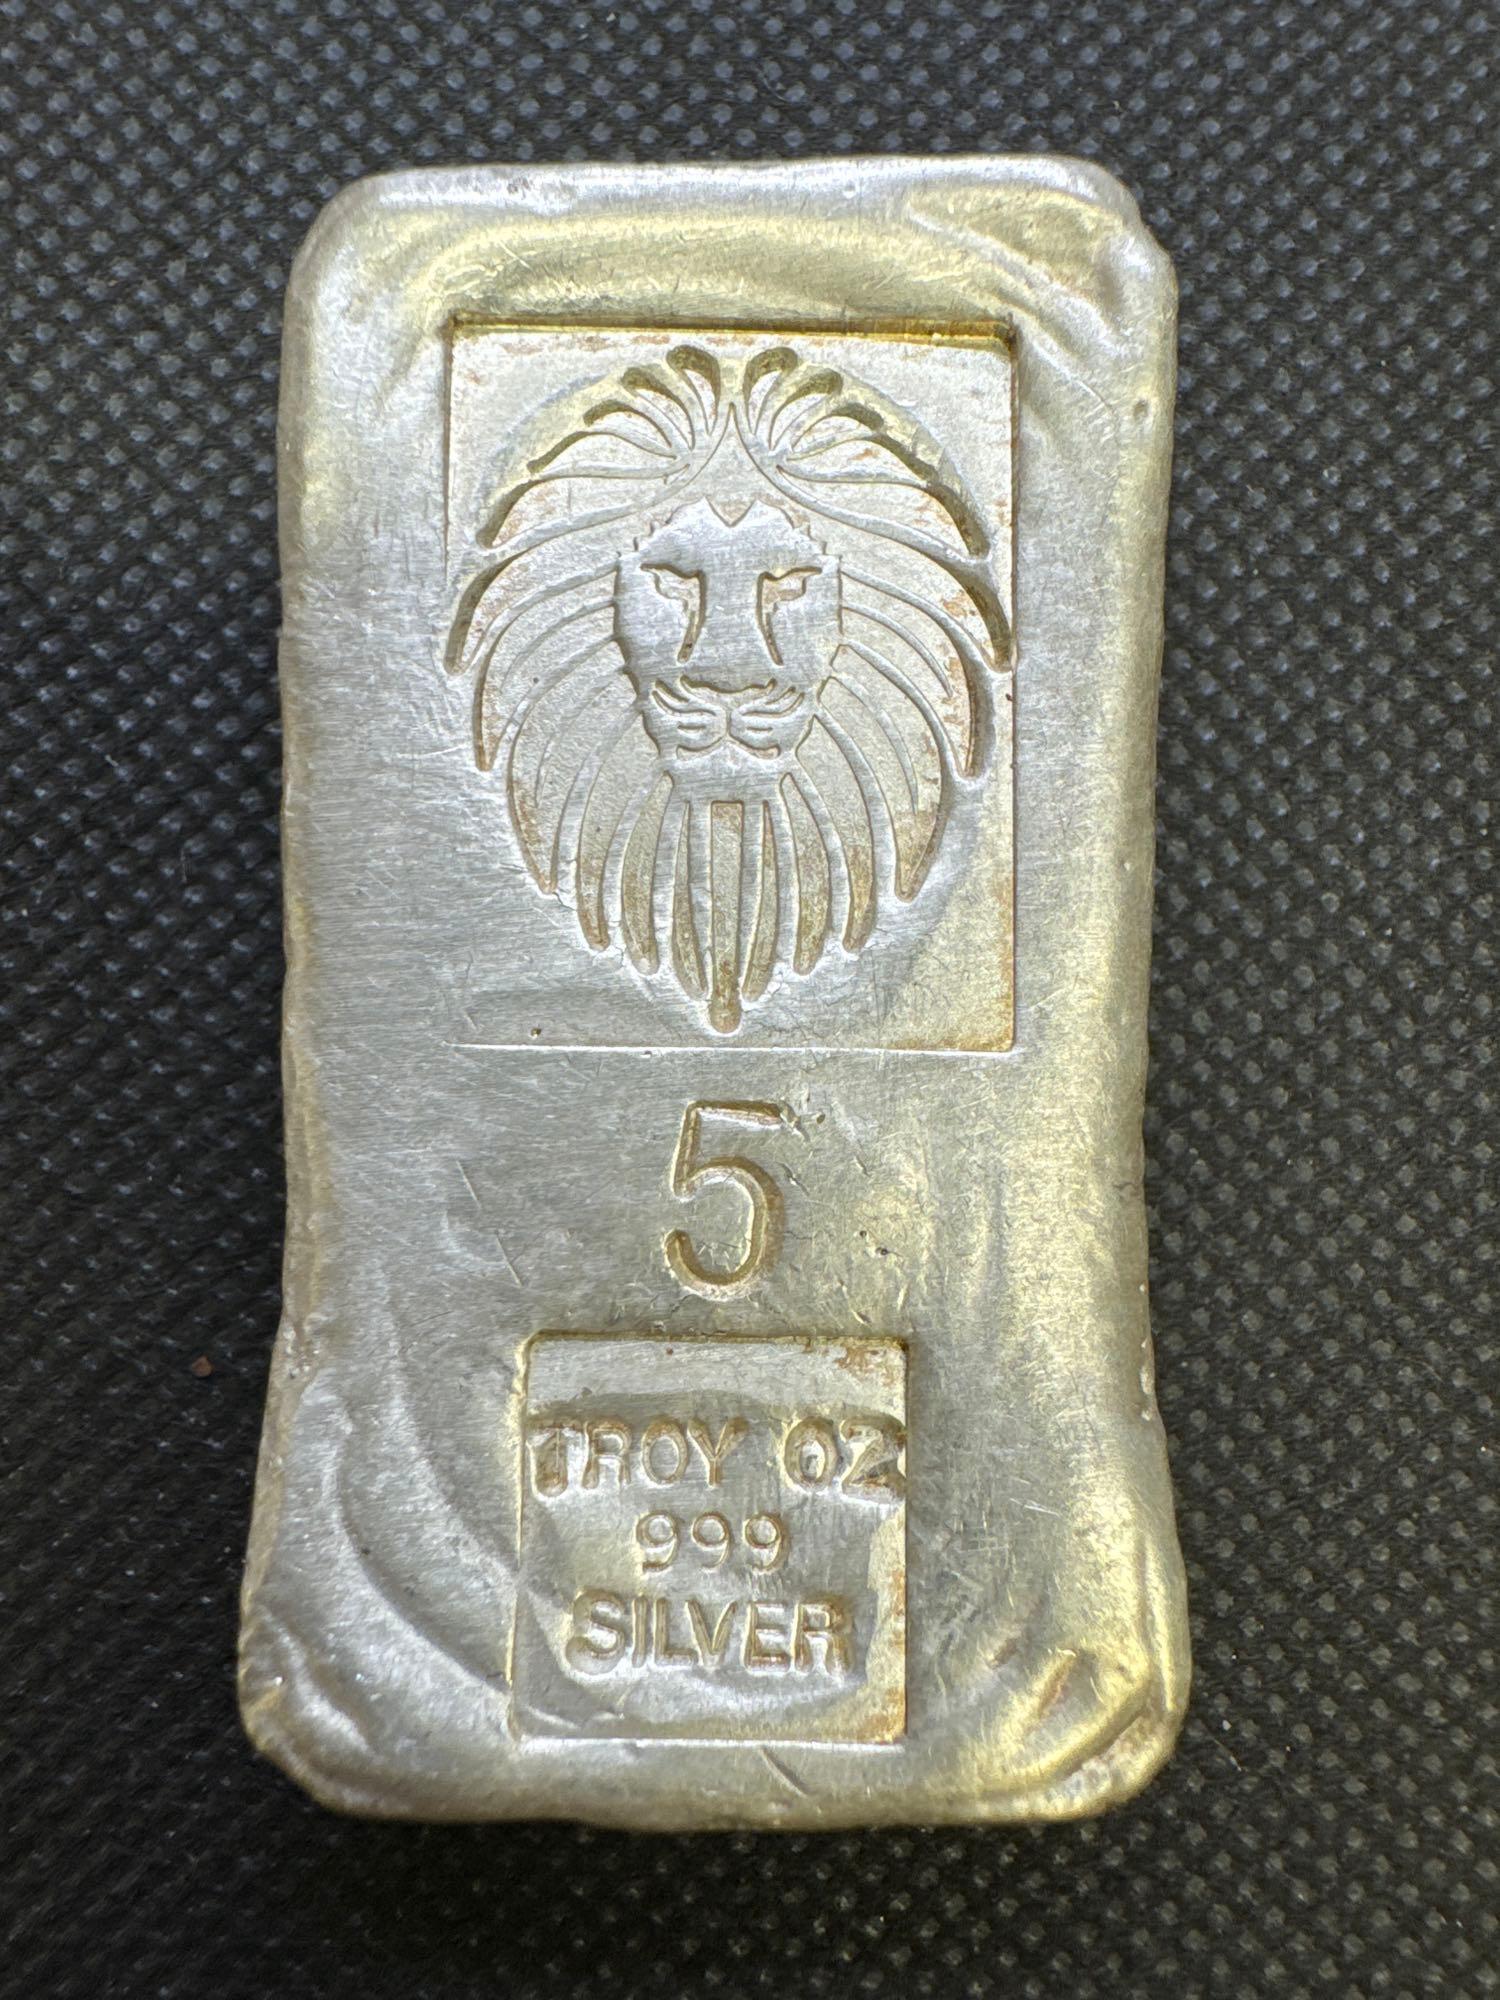 5 Troy Oz Lion Head .999 Fine Silver Bullion Bar